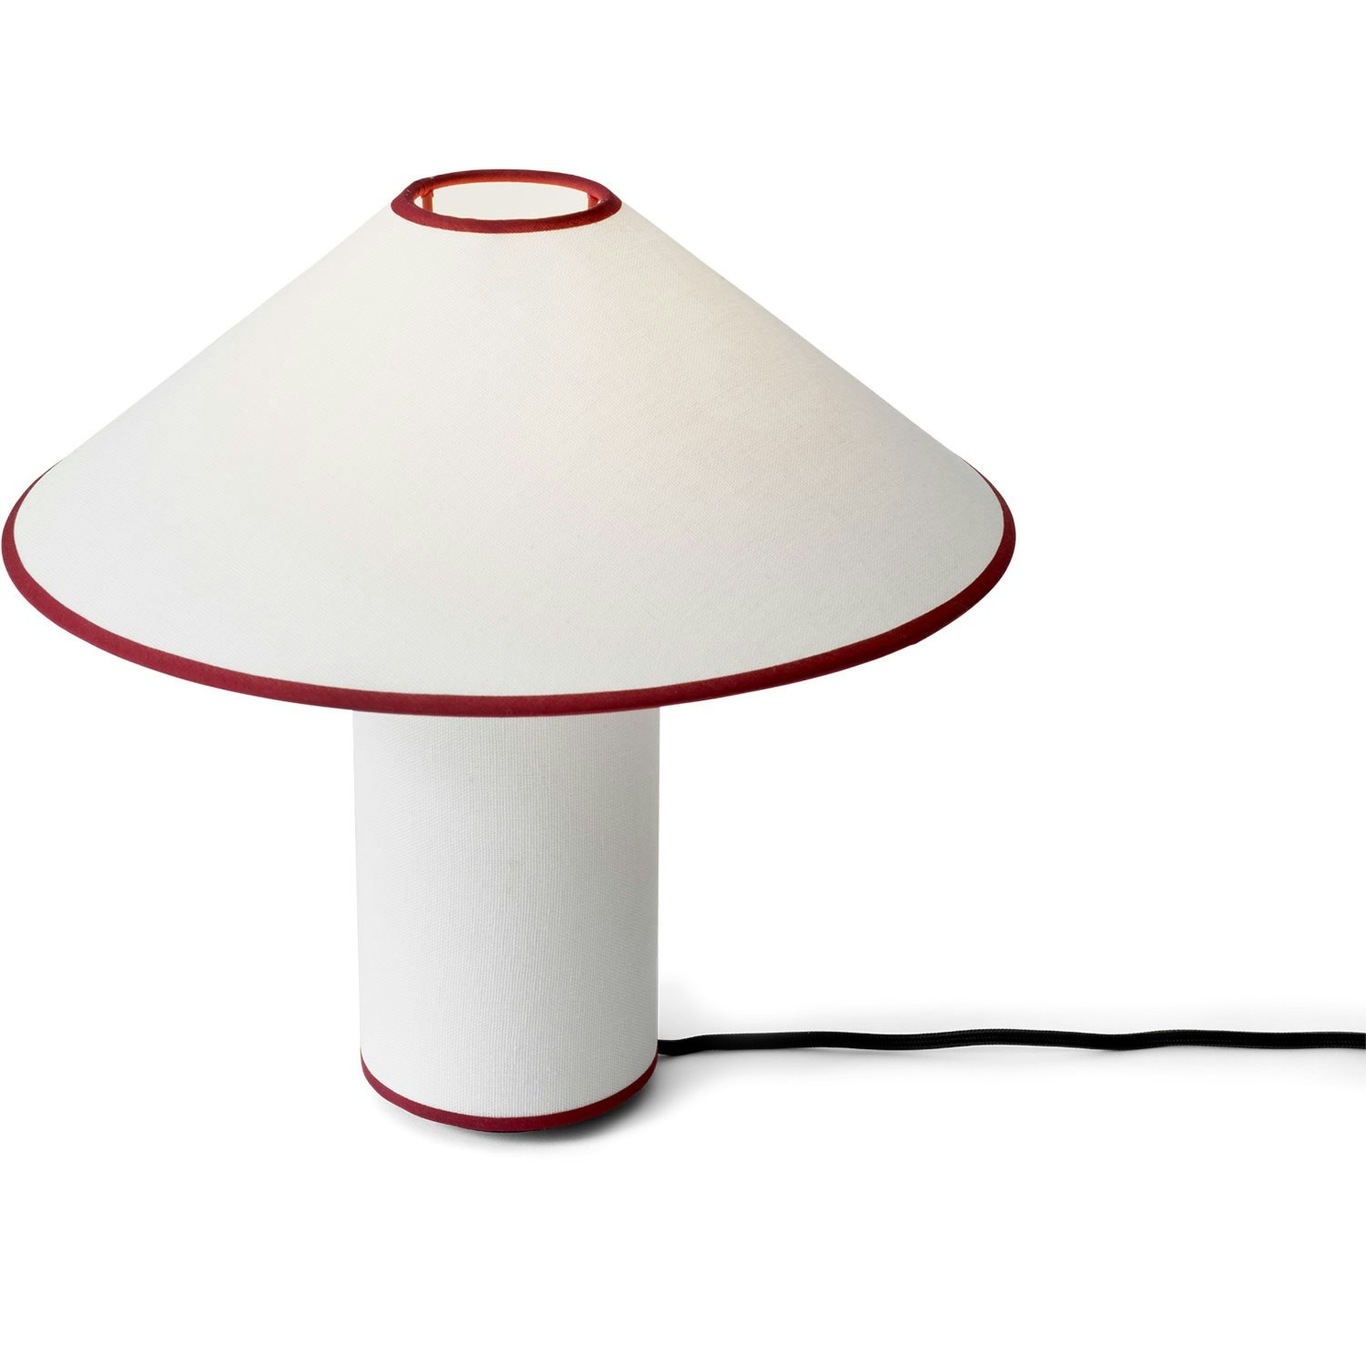 Colette ATD6 Bordlampe, Hvit/Merlot